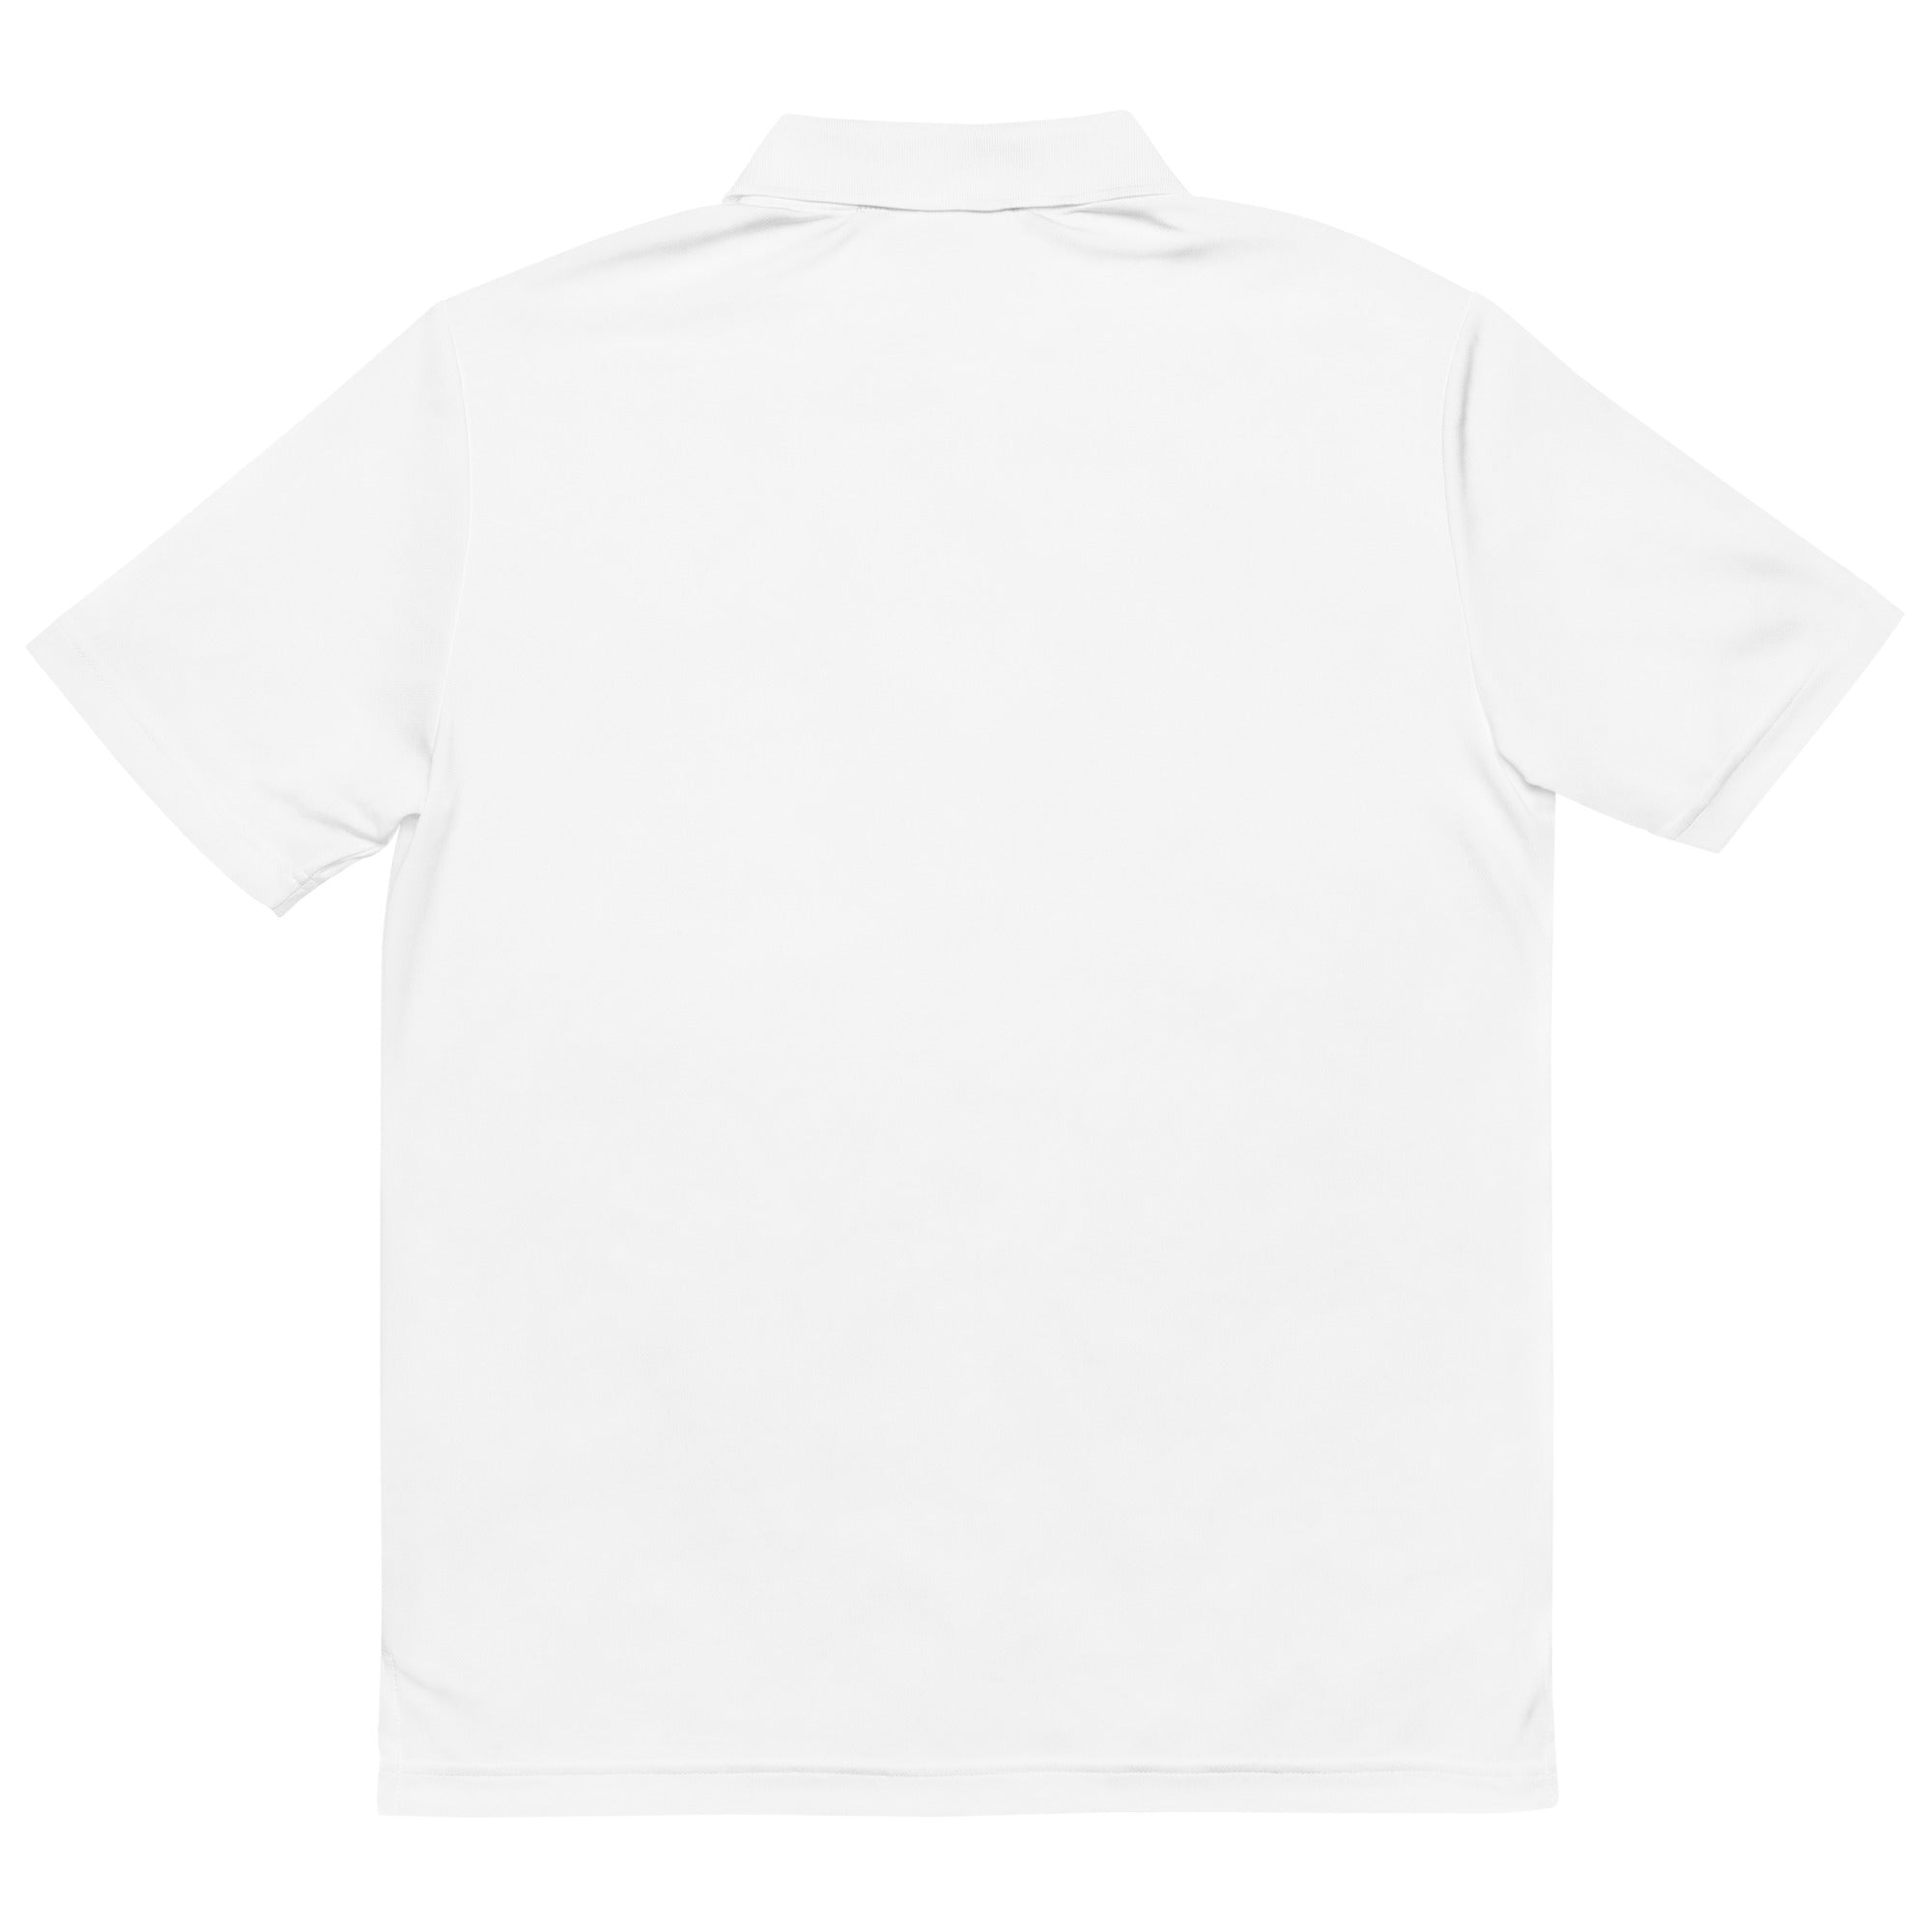 OB Stake Adidas Performance Polo Shirt